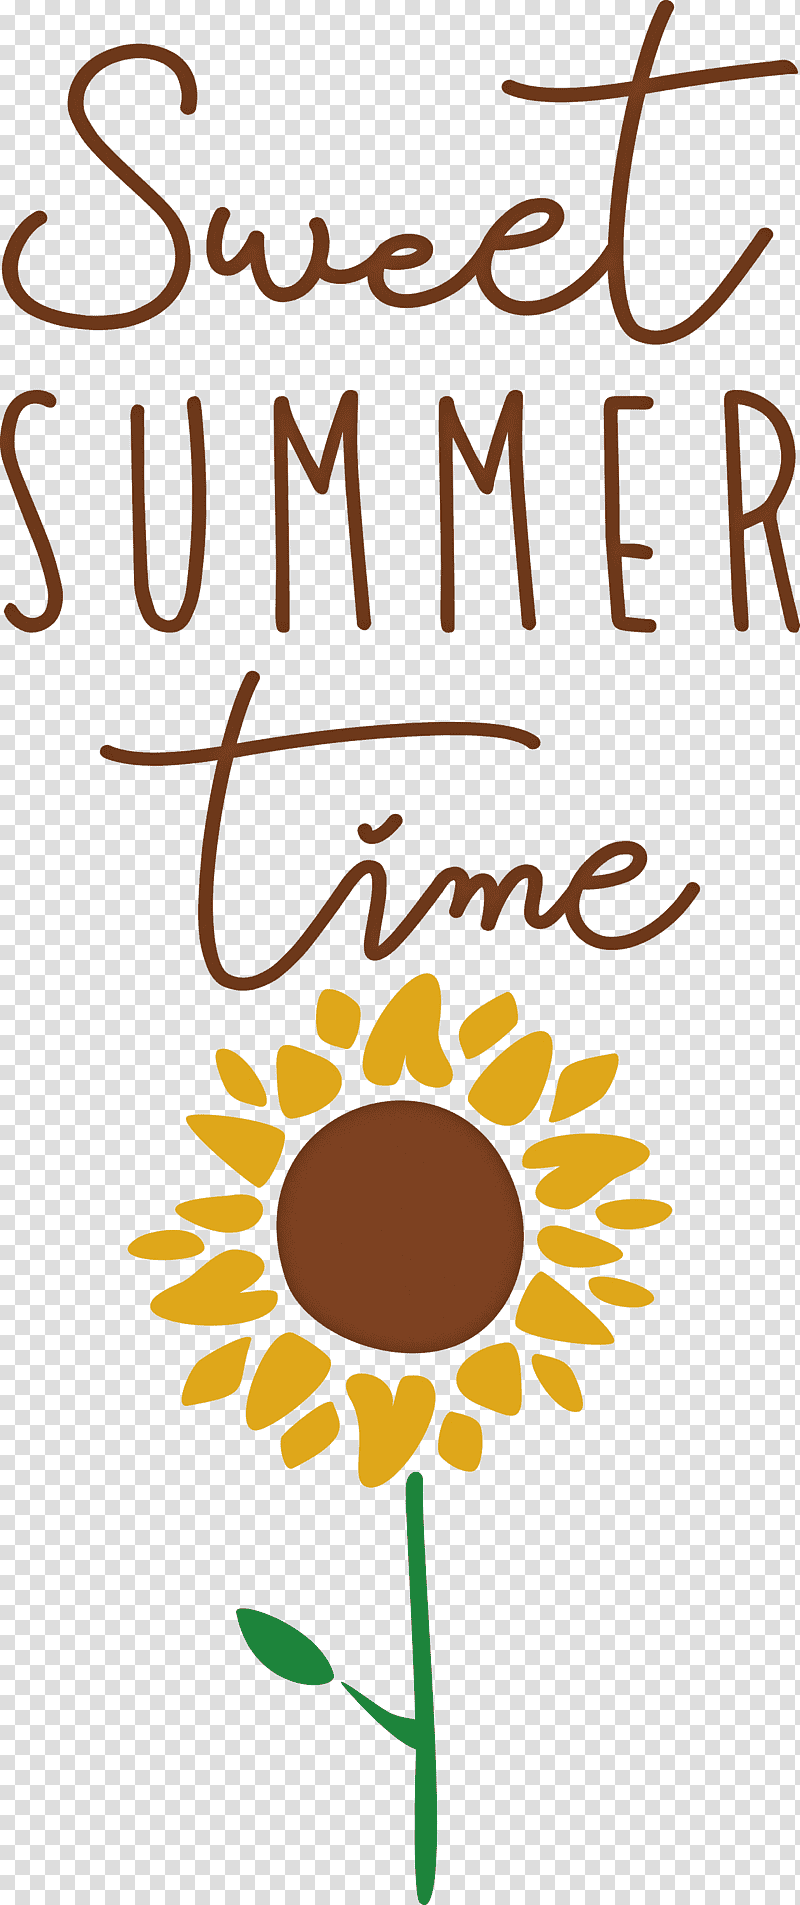 sweet summer time summer, Summer
, Line, Cartoon, Communication Design, Text, Ascii Art transparent background PNG clipart